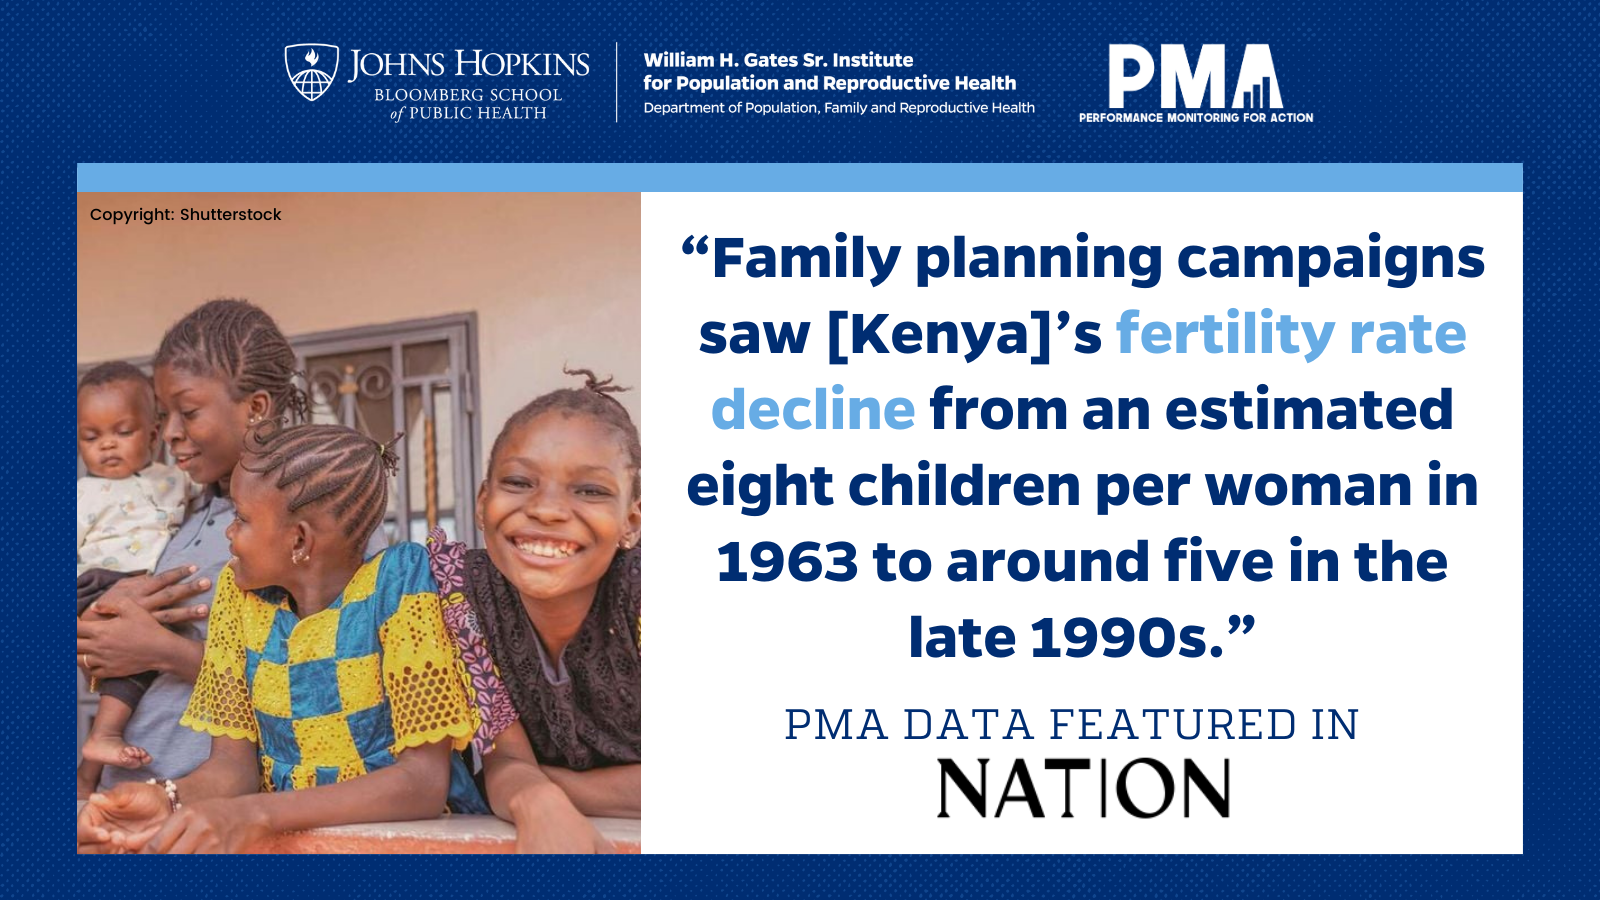 Les données de PMA sont présentées dans le pays par Angela Okech, membre du FPNN et lauréate du prix EXCELL de l'ICFP